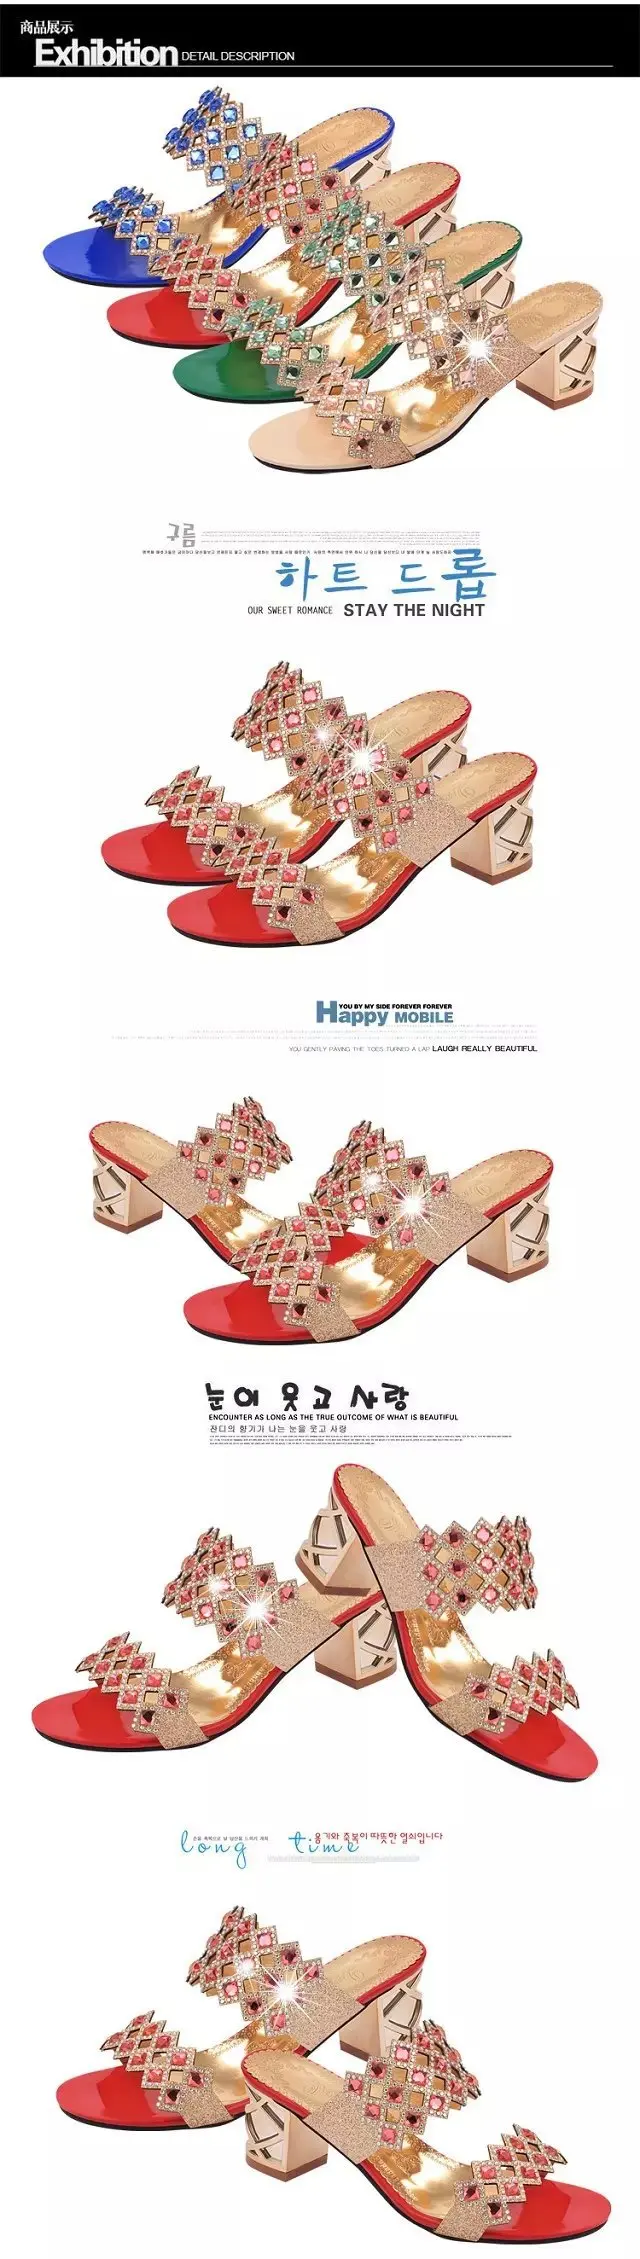 2017Hot женщины сандалии высокое качество PU удобные летние сандалии женщин скольжения на высоких каблуках мода кристалл sandalias mujer 4 цвет